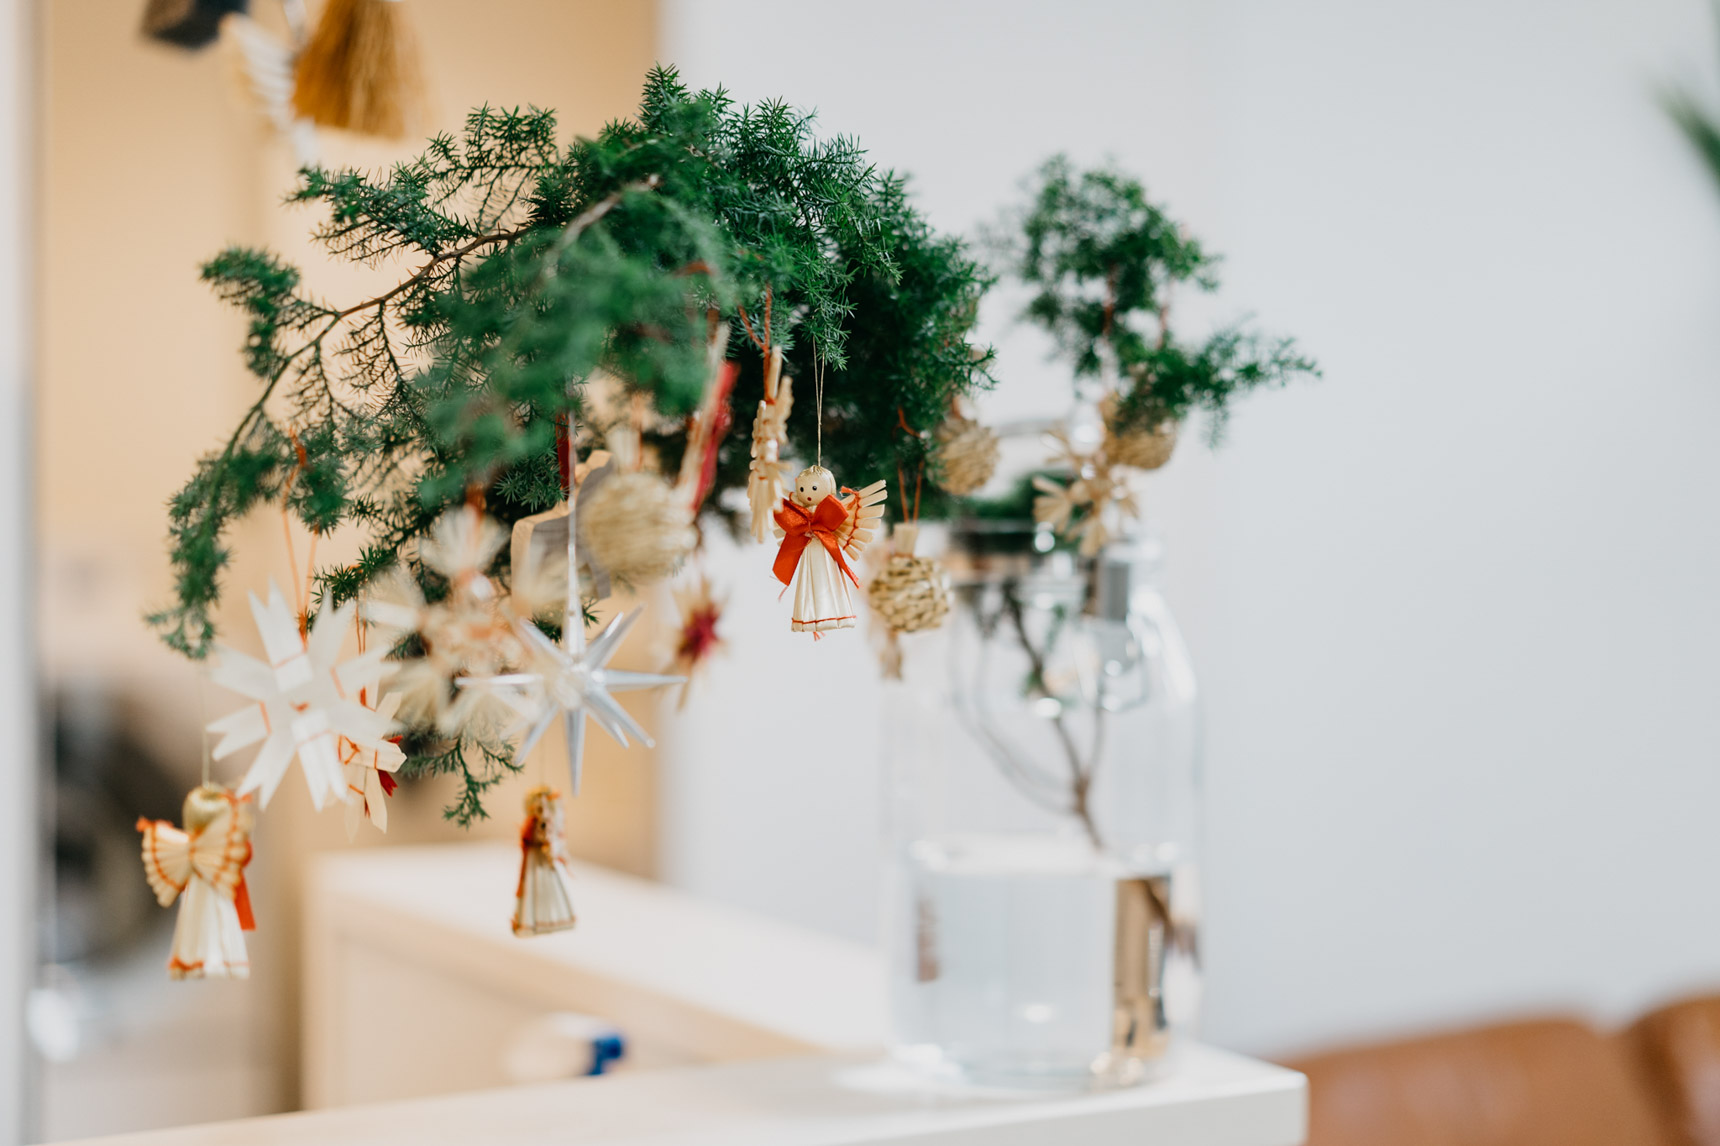 クリスマスシーズン前になると、モミやネズ枝などの、クリスマスらしい枝物などが花屋に並びます。1～2枝を大きめの花瓶に飾り、オーナメントをつければ、すっかりクリスマスらしい雰囲気に。